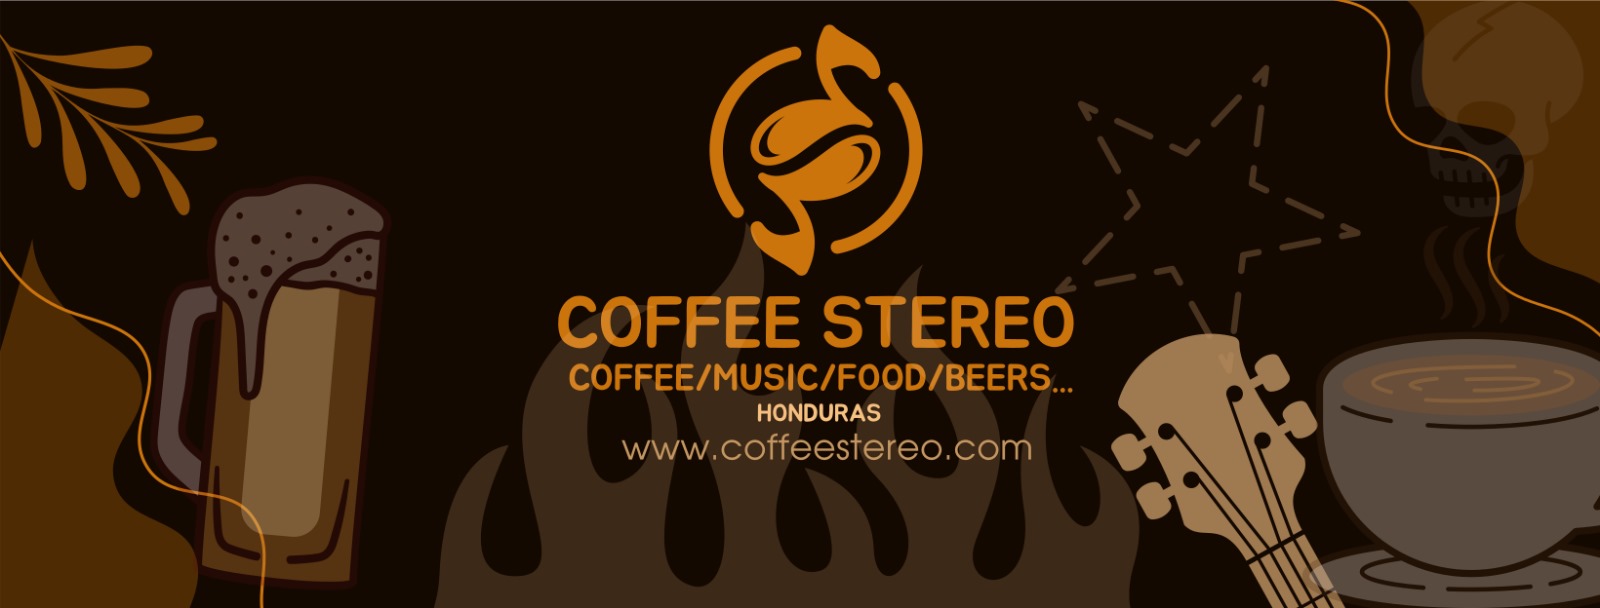 Coffee Stereo